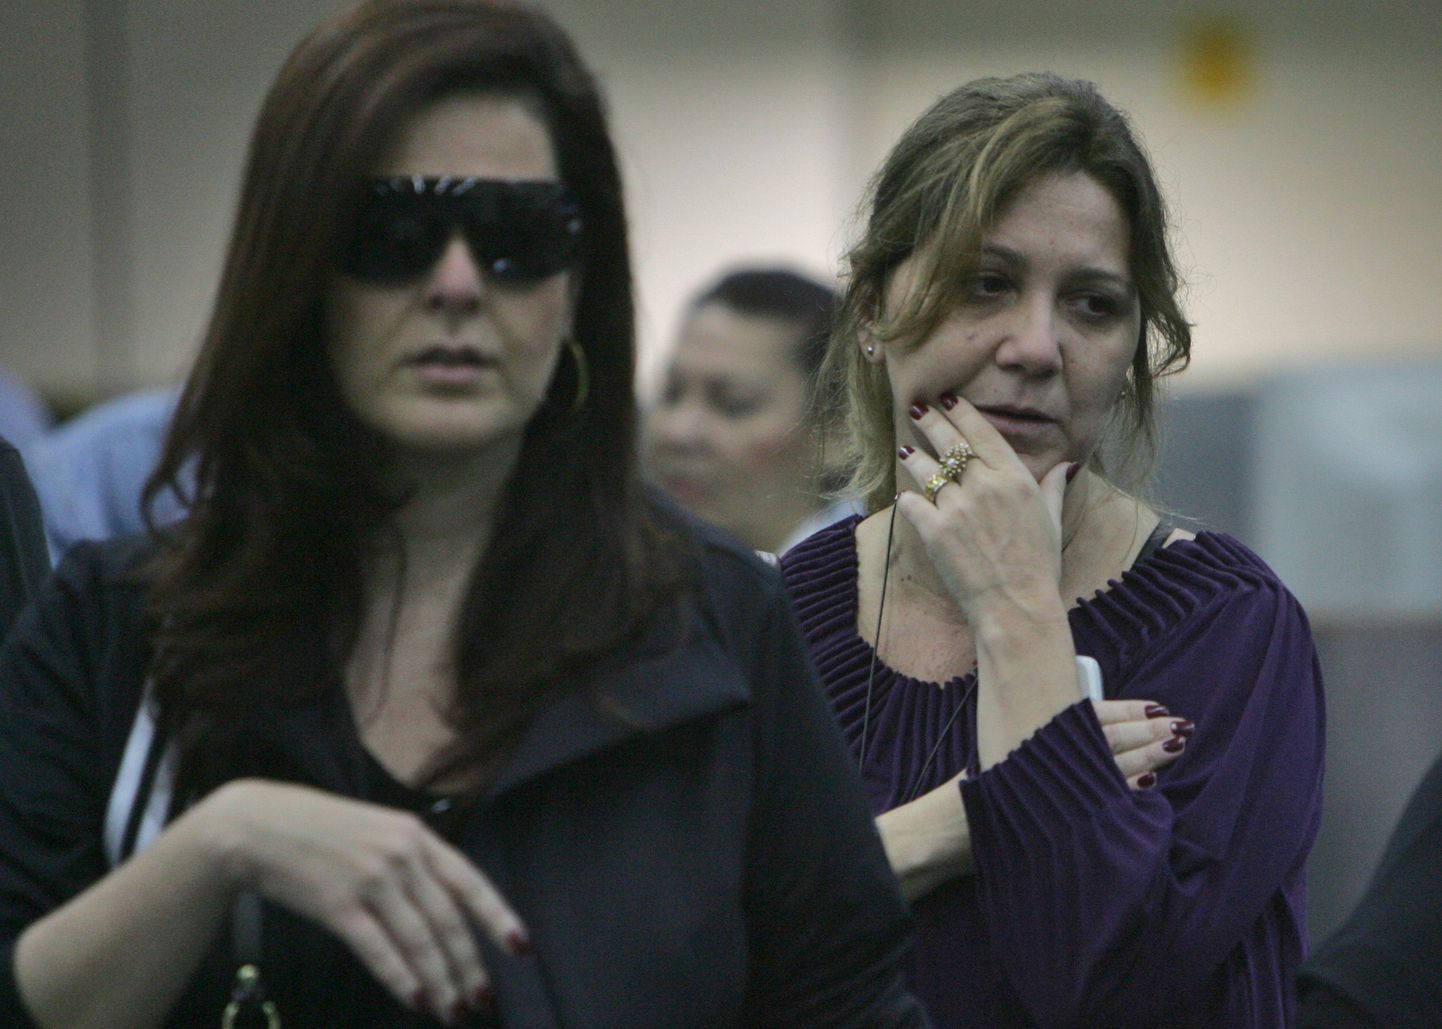 Pilt on tehtud eile Rio de Janeiro lennuväljal, kus lennu 447 olnud inimeste sugulased ootasid infot kadunud lennuki kohta.